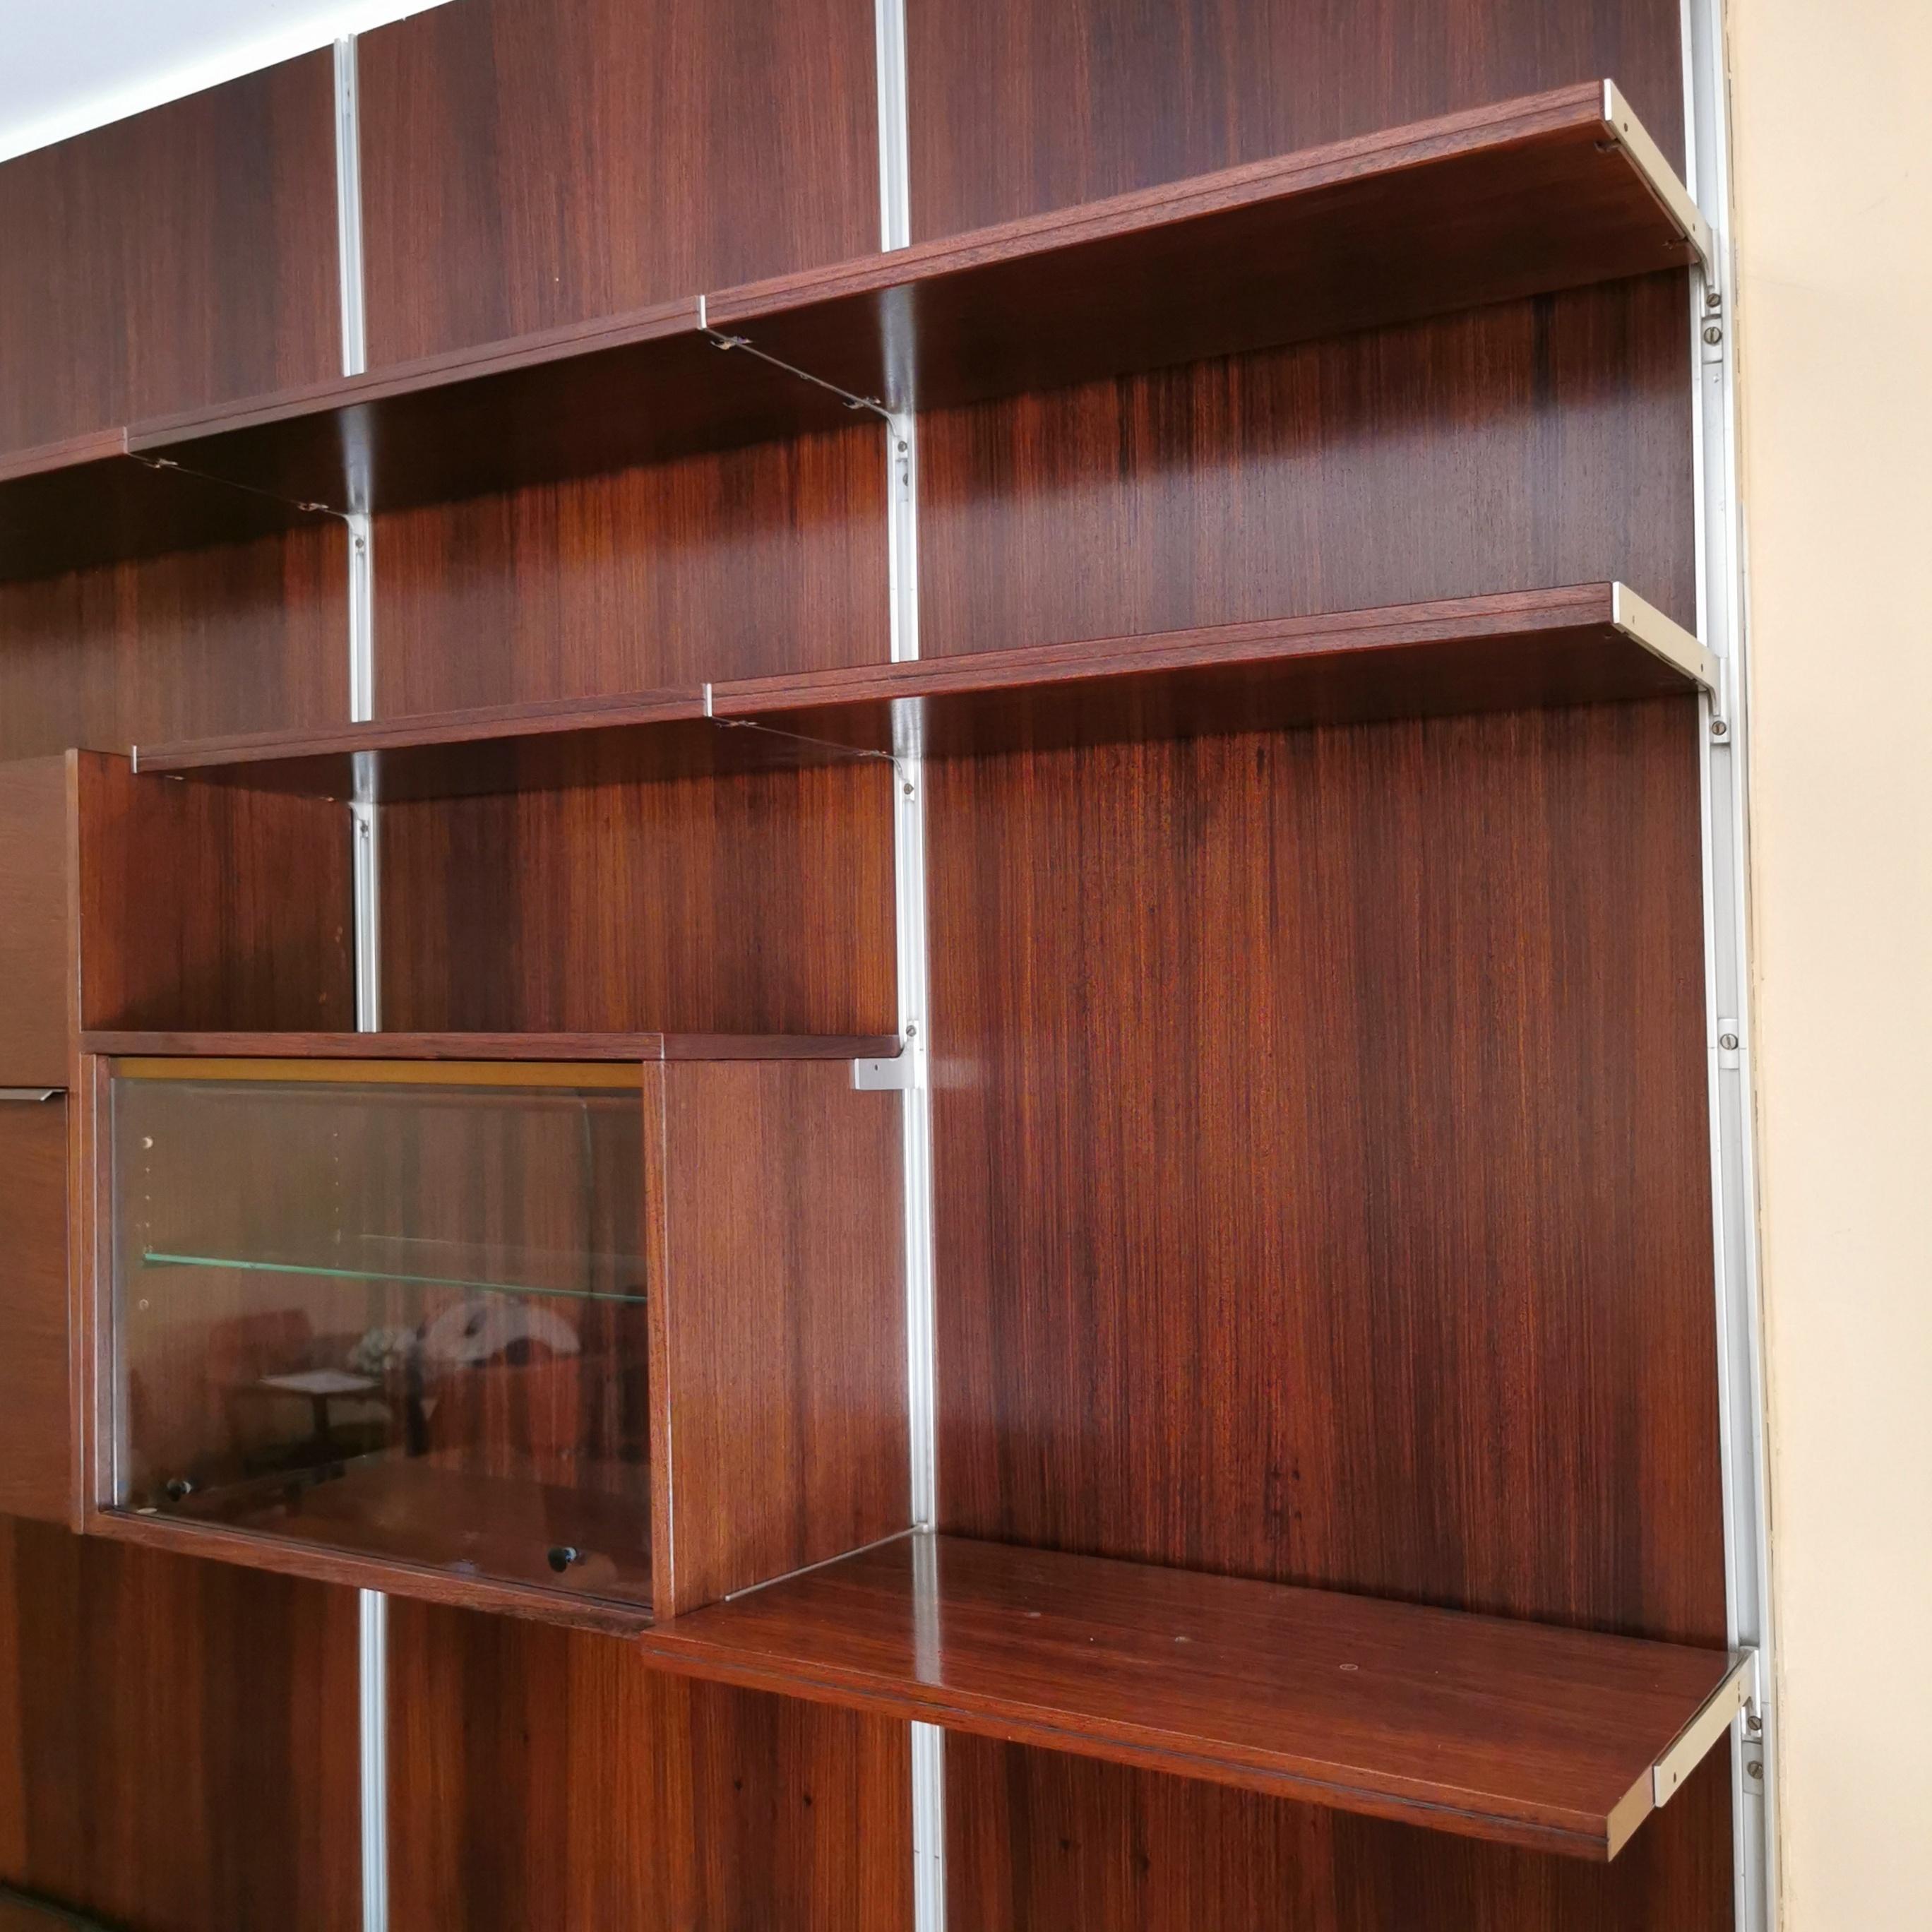 Splendida Libreria E22 disegnata da Osvaldo Borsani per Tecno spa negli anni 60.
molteplici mobili contenitori bassi e modulo bar con ribalta.
E' Possibile rimuovere i pannelli posteriori in legno montando quindi la libreria con muro a vista
Le